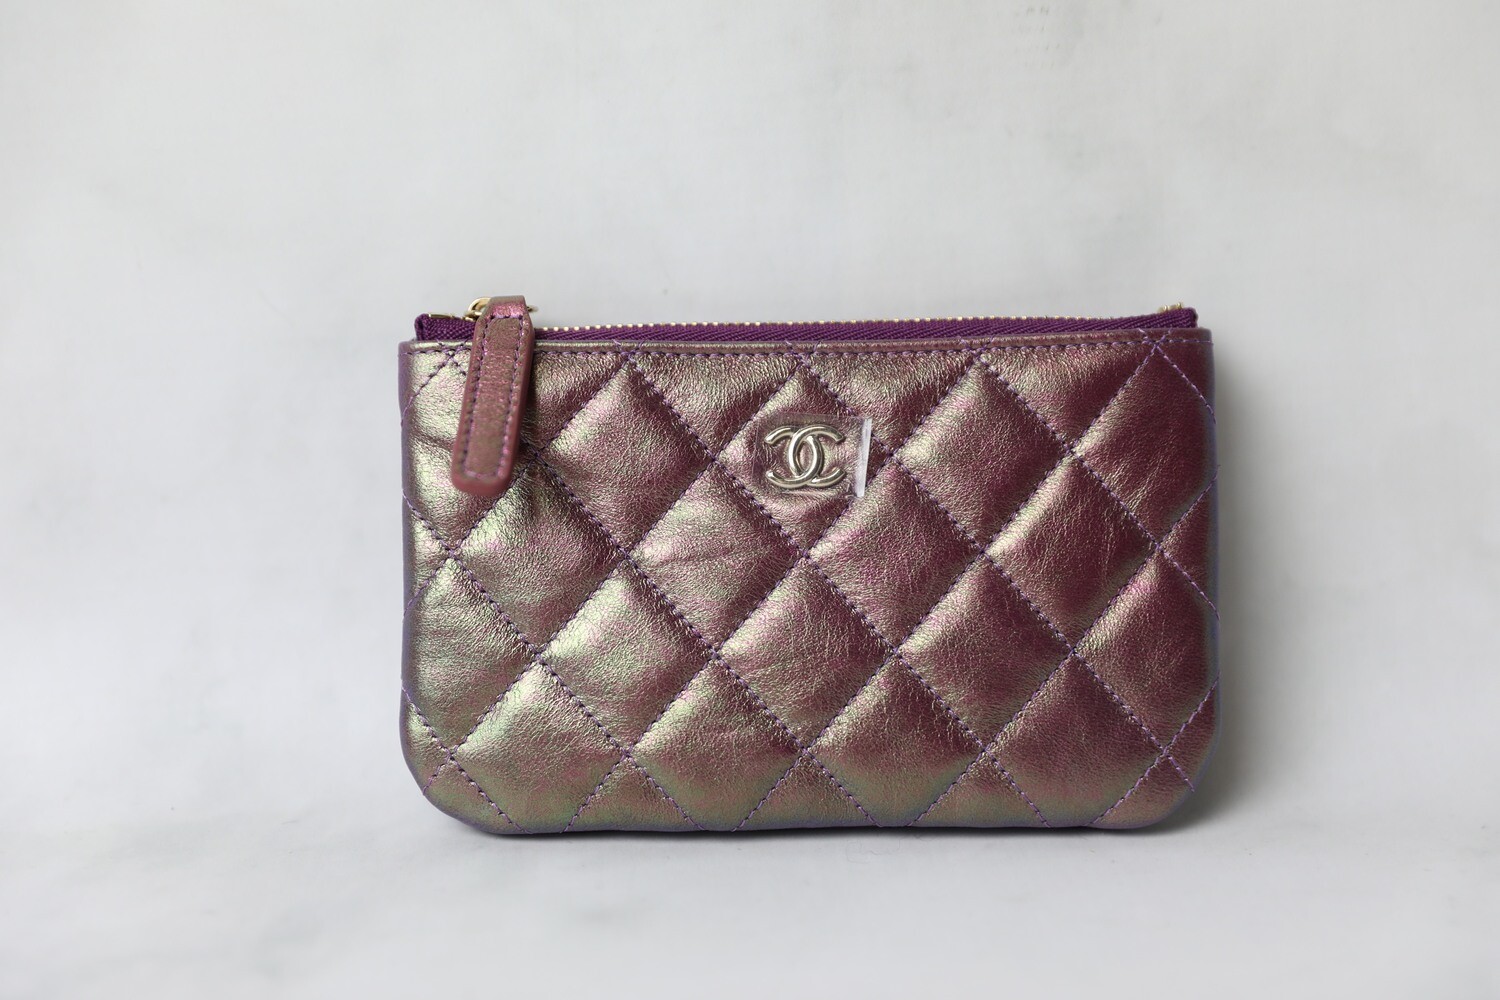 Chanel SLG Mini O Case, Purple iridescent, New in Box